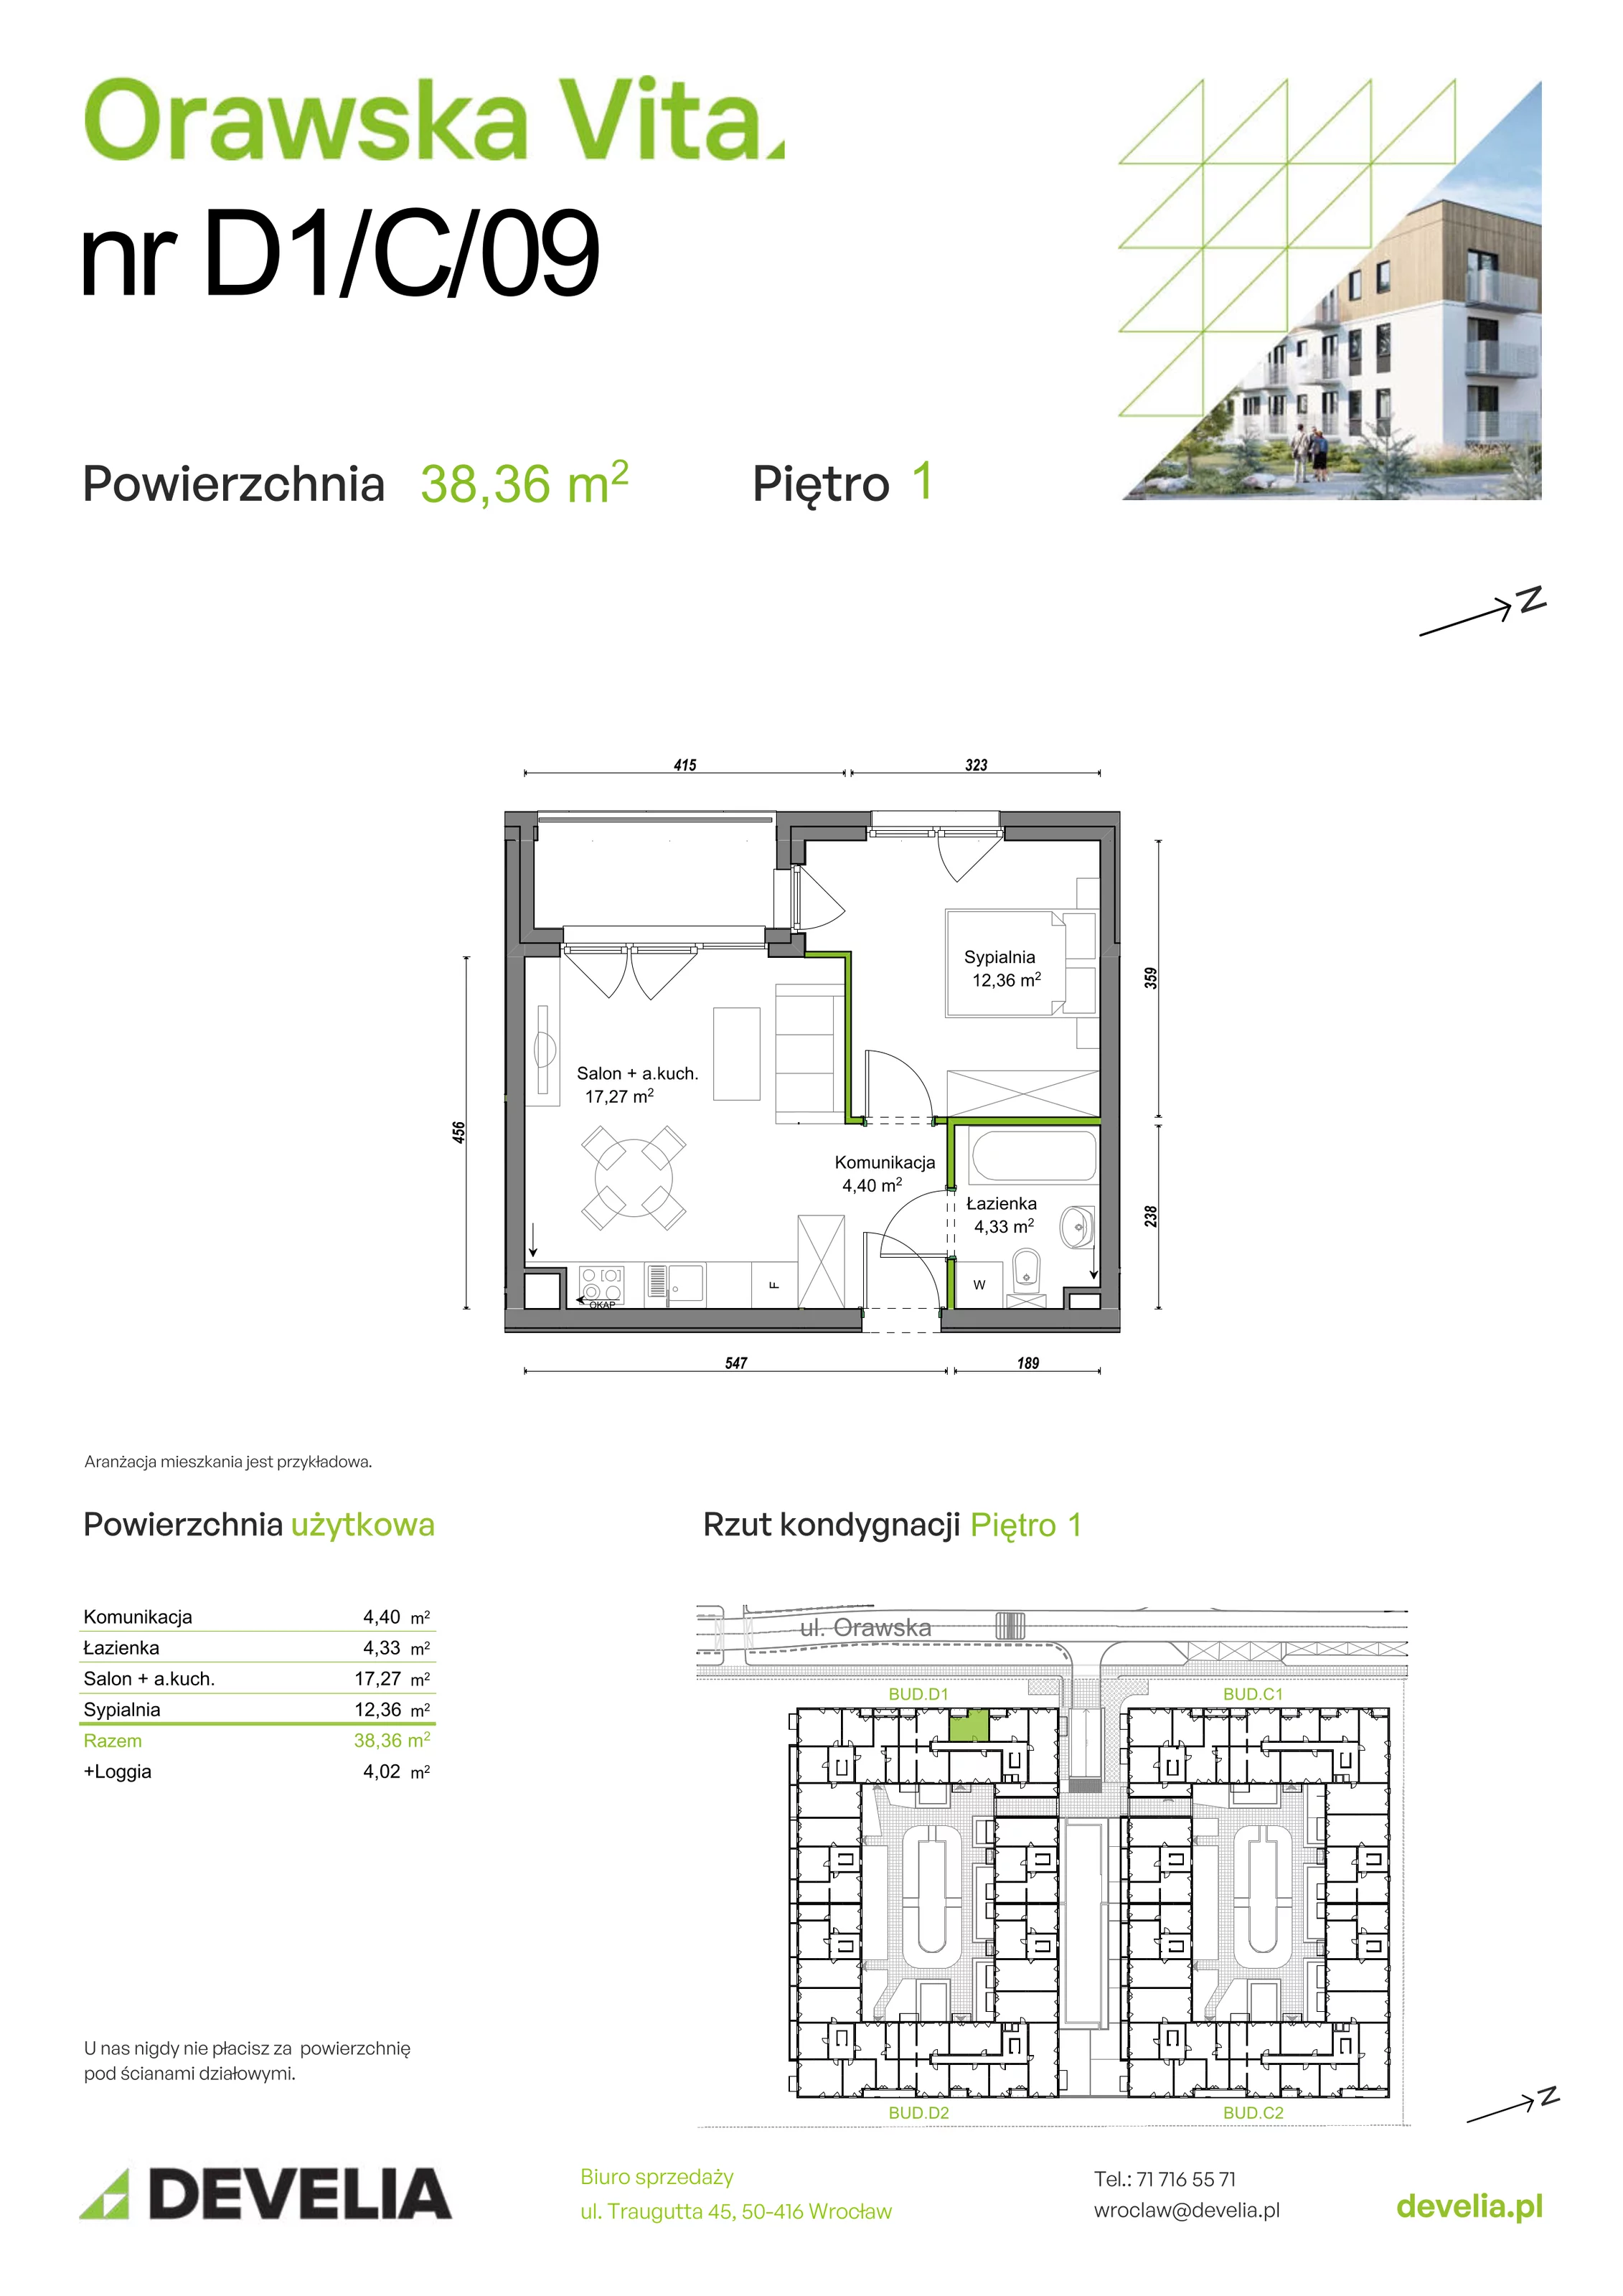 Mieszkanie 38,36 m², piętro 1, oferta nr D1/C/09, Orawska Vita, Wrocław, Ołtaszyn, Krzyki, ul. Orawska 73